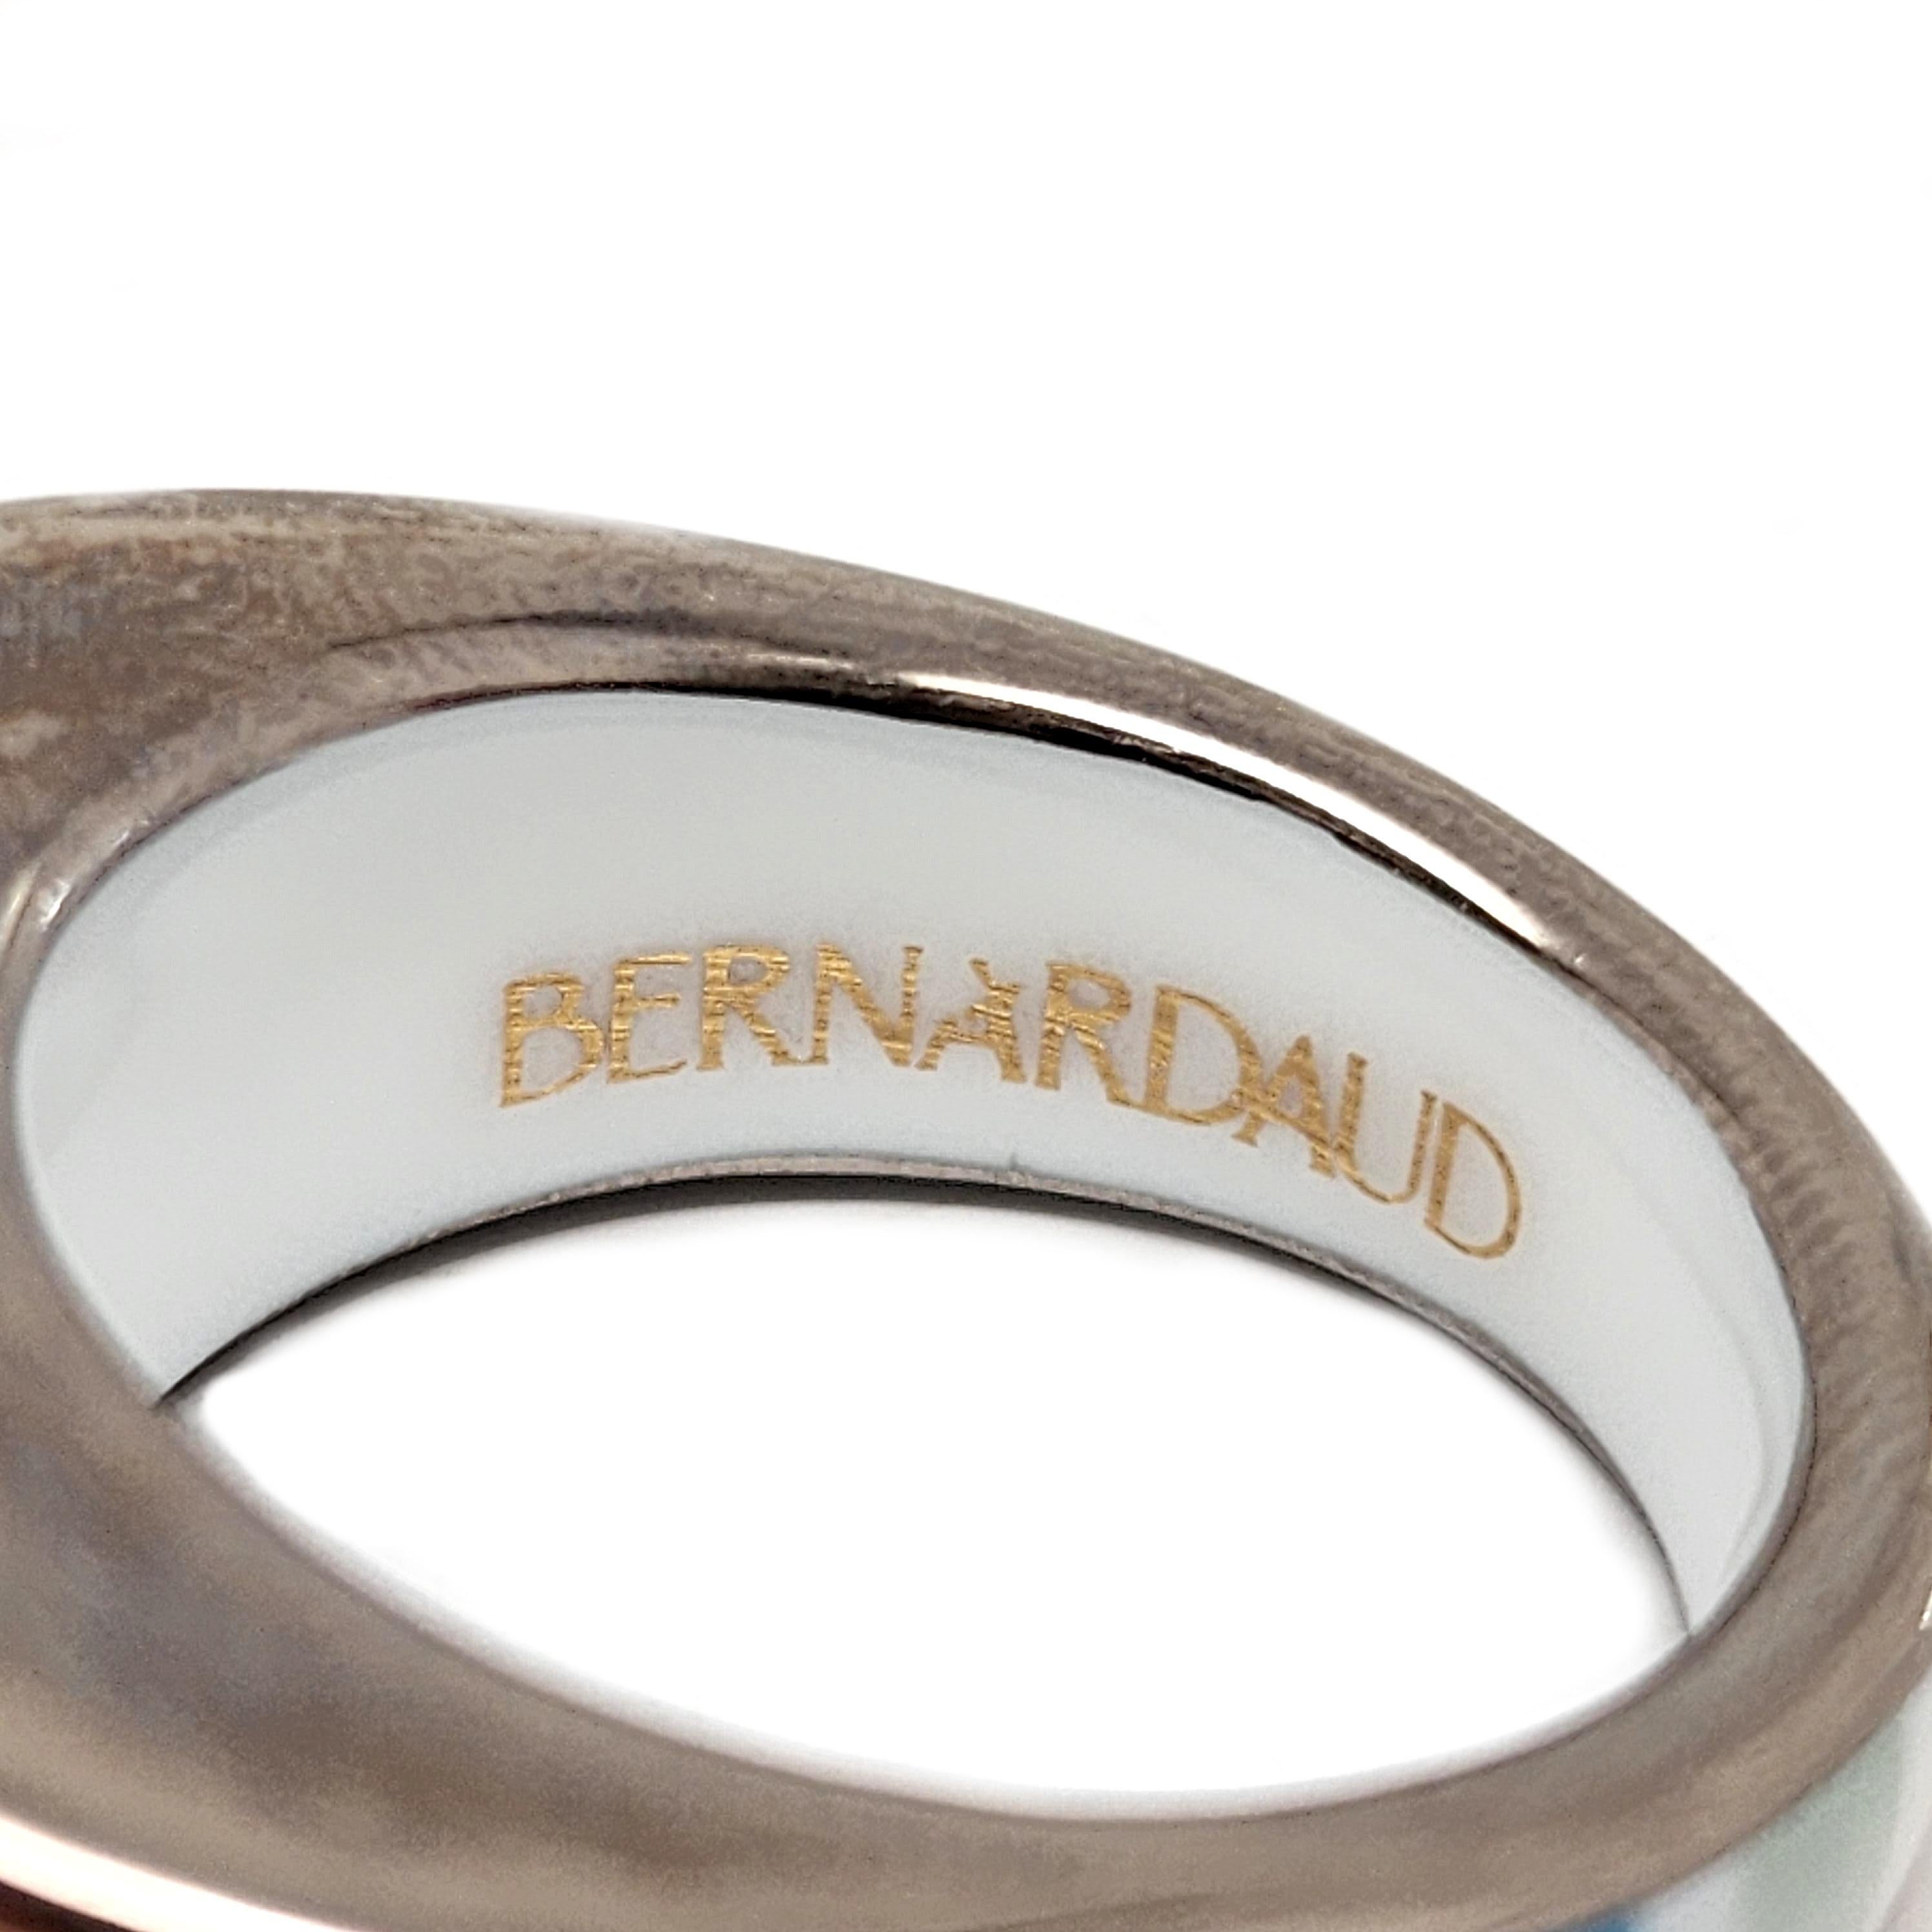 Bernardaus Paris Porcelain Enamel Ring Size 6.5 #14784 3